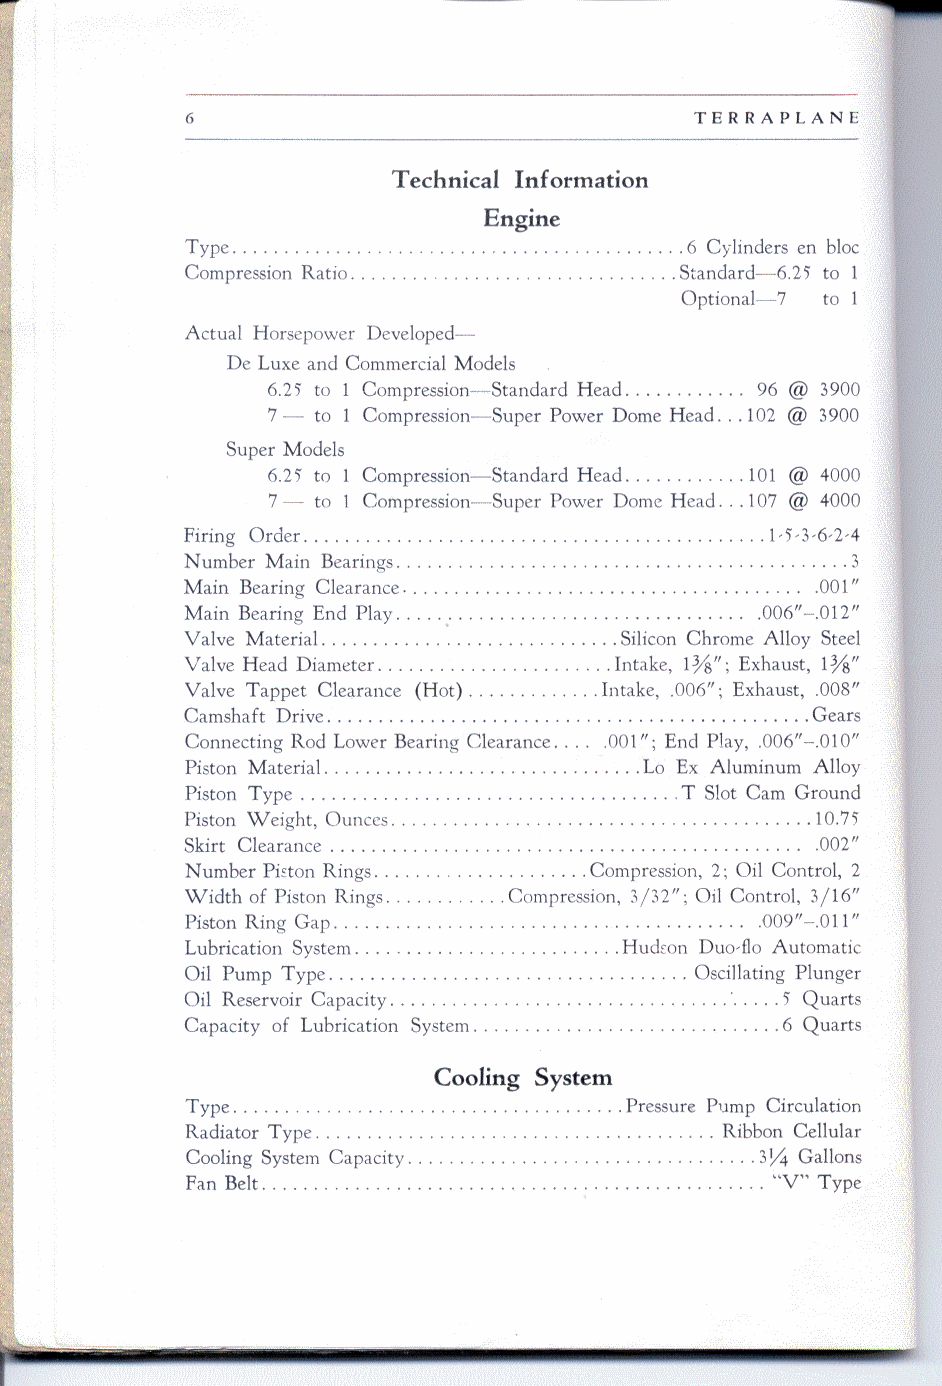 1937_Terraplane_Owners_Manual-06